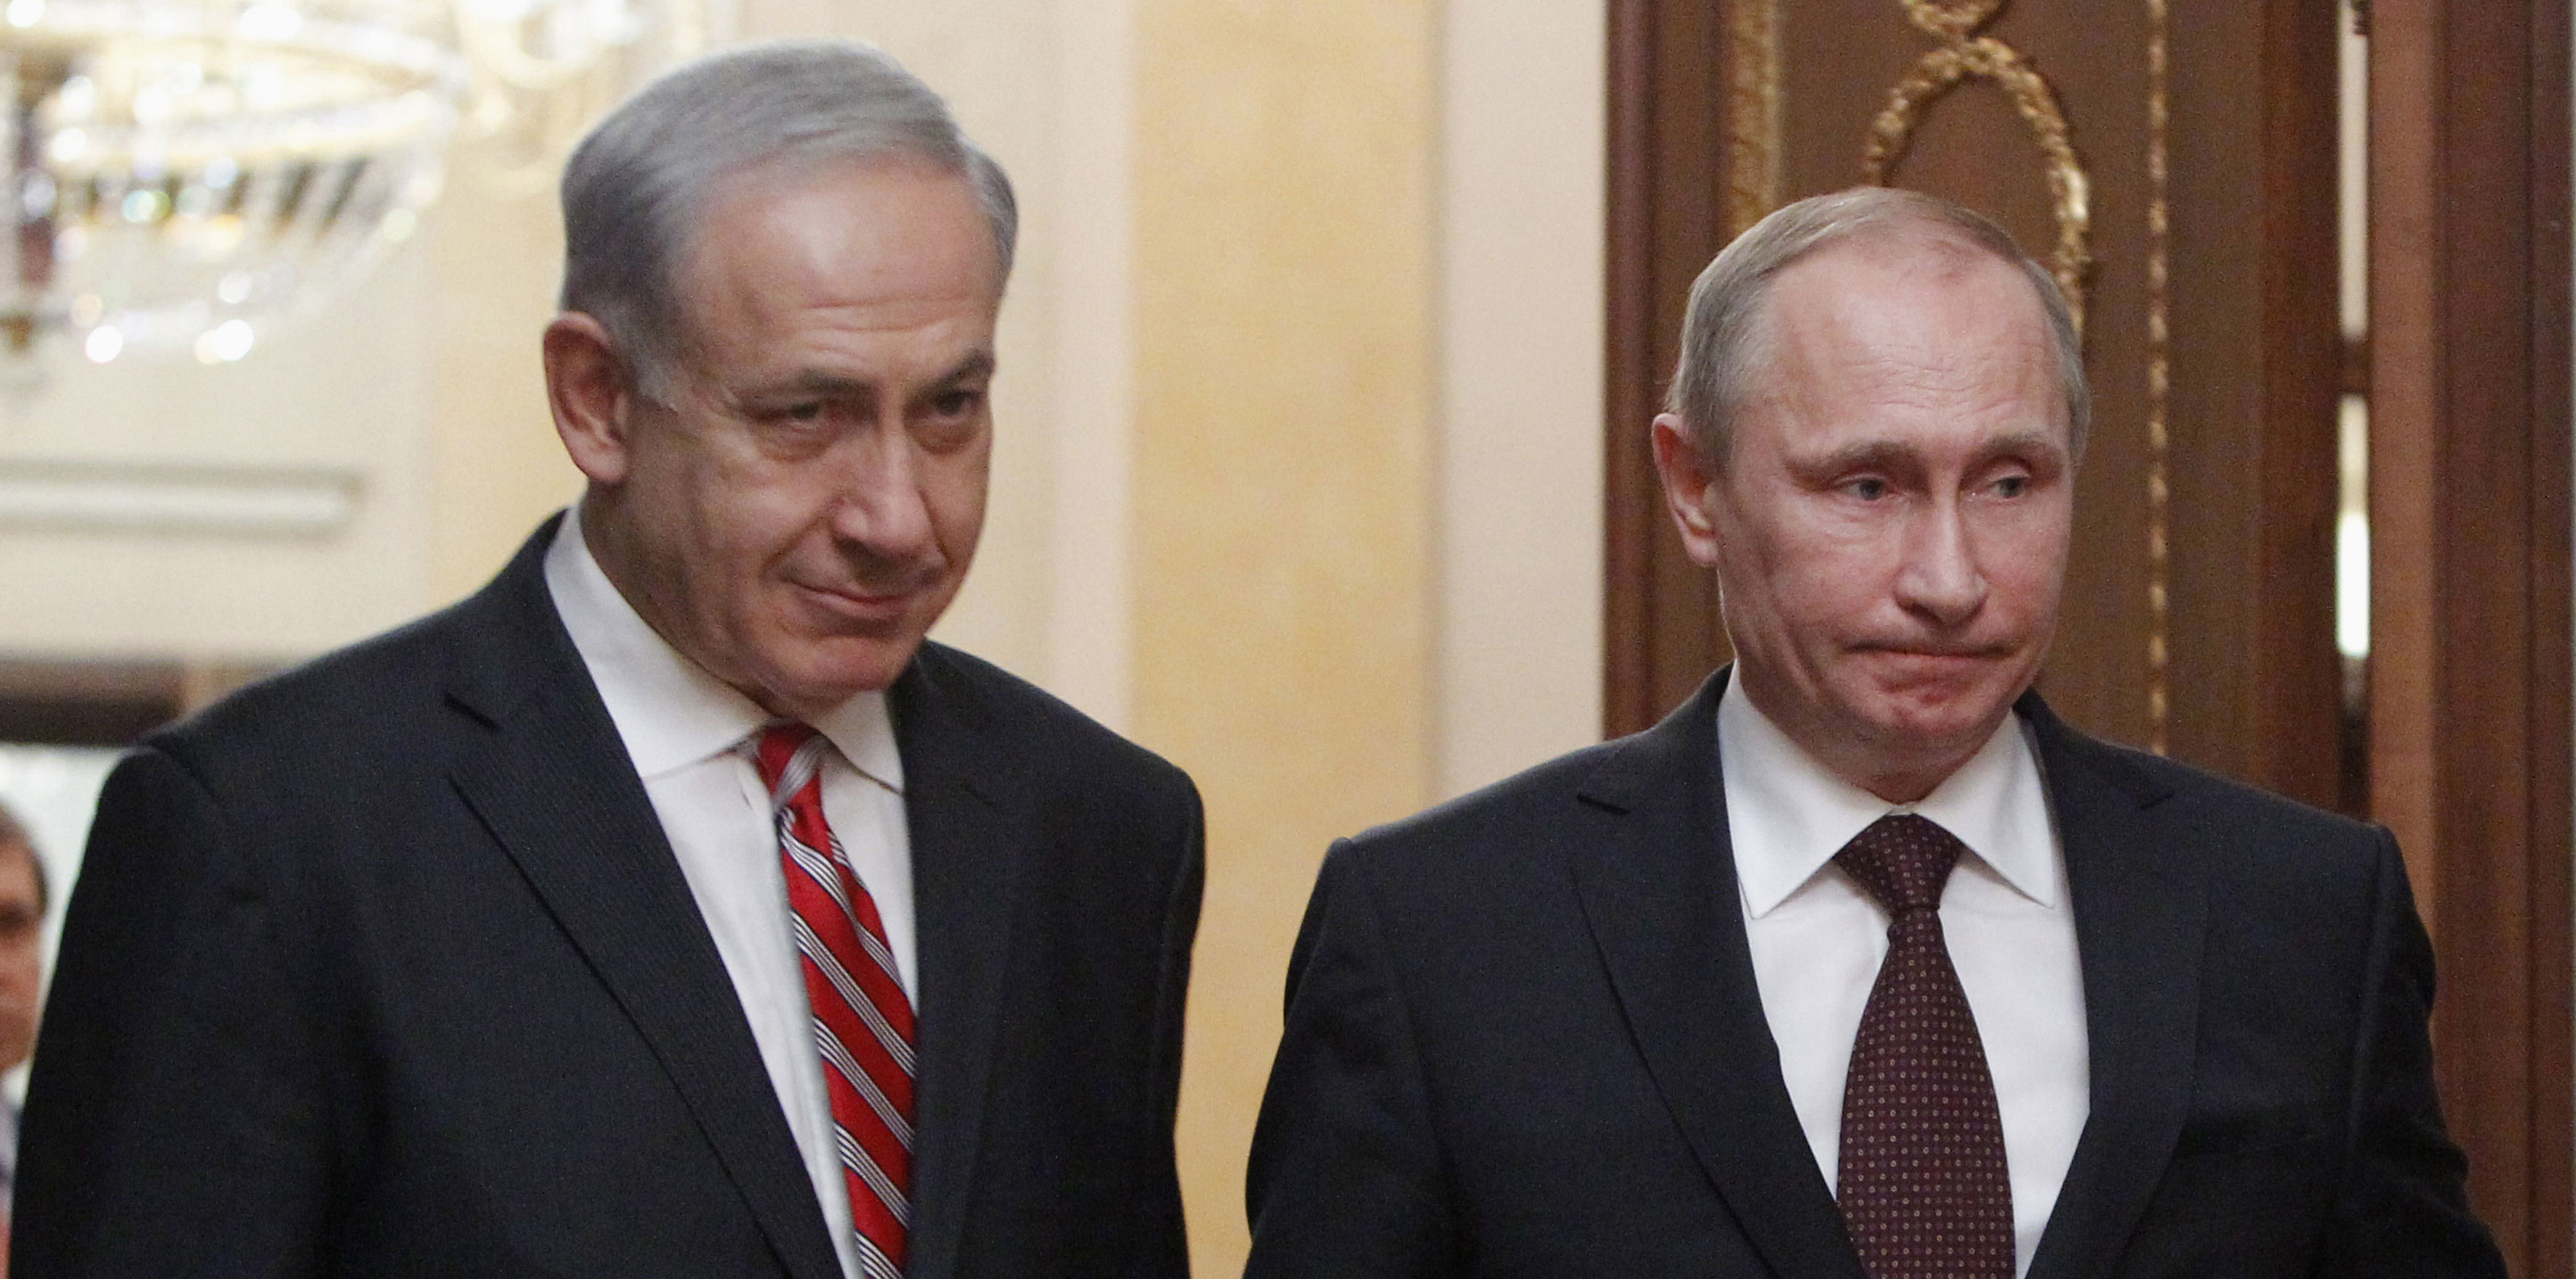 دور بوتين في المواجهة الأخيرة بين إيران والکيان الإسرائيلي; الوهم الذي يجب على الکيان الإسرائيلي تجنبه